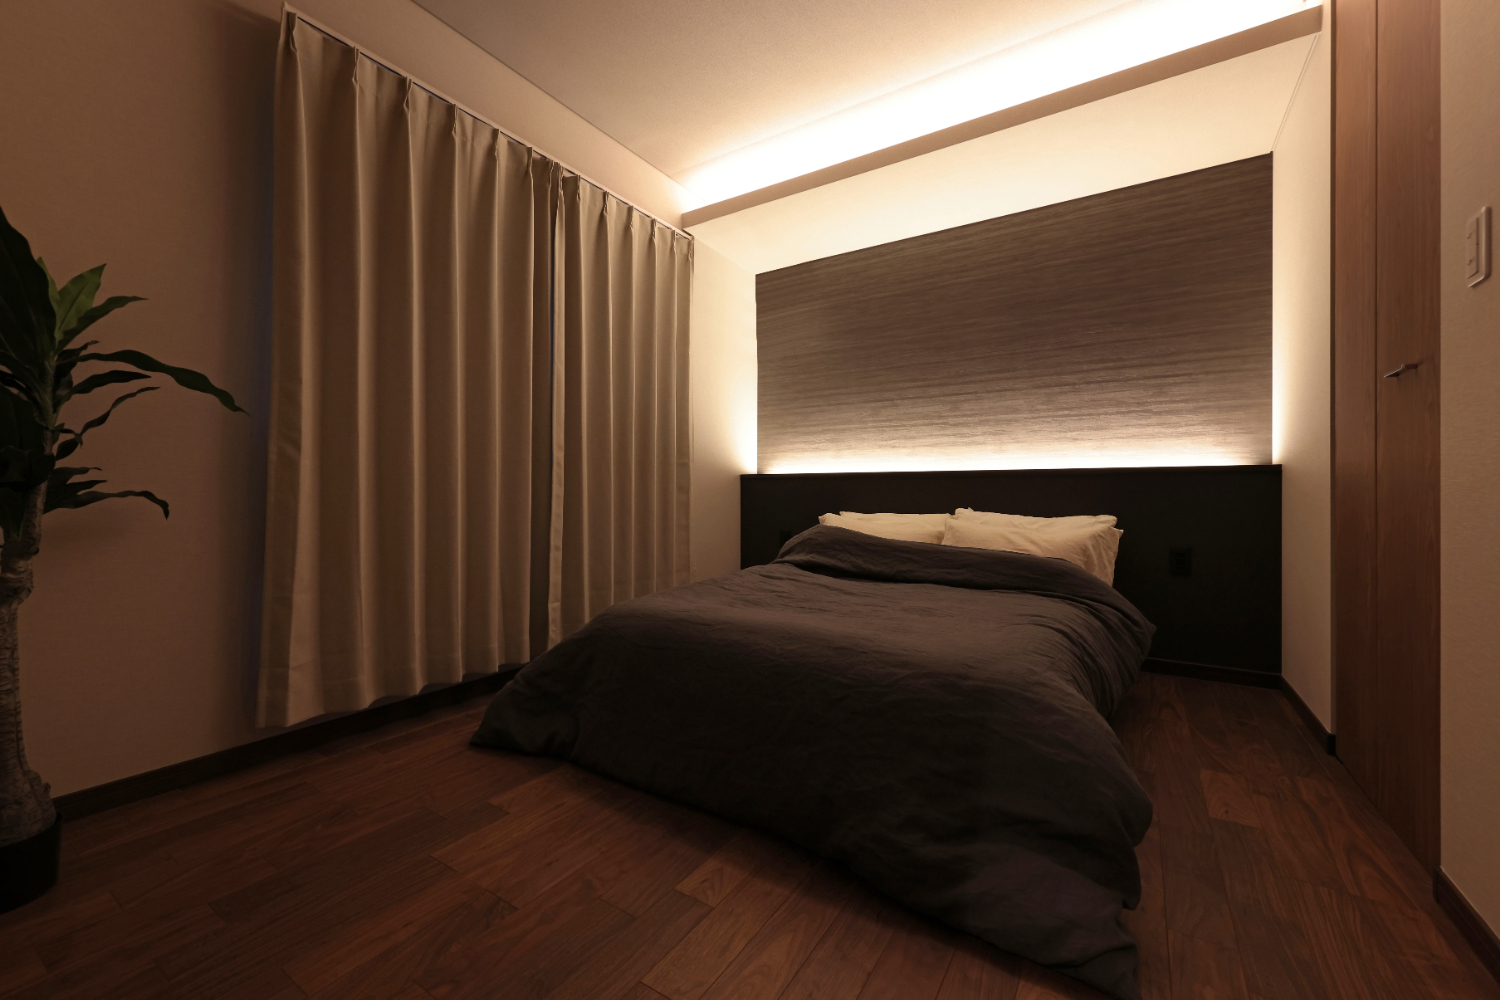 ホテルライクな間接照明にやすらぎを感じる寝室